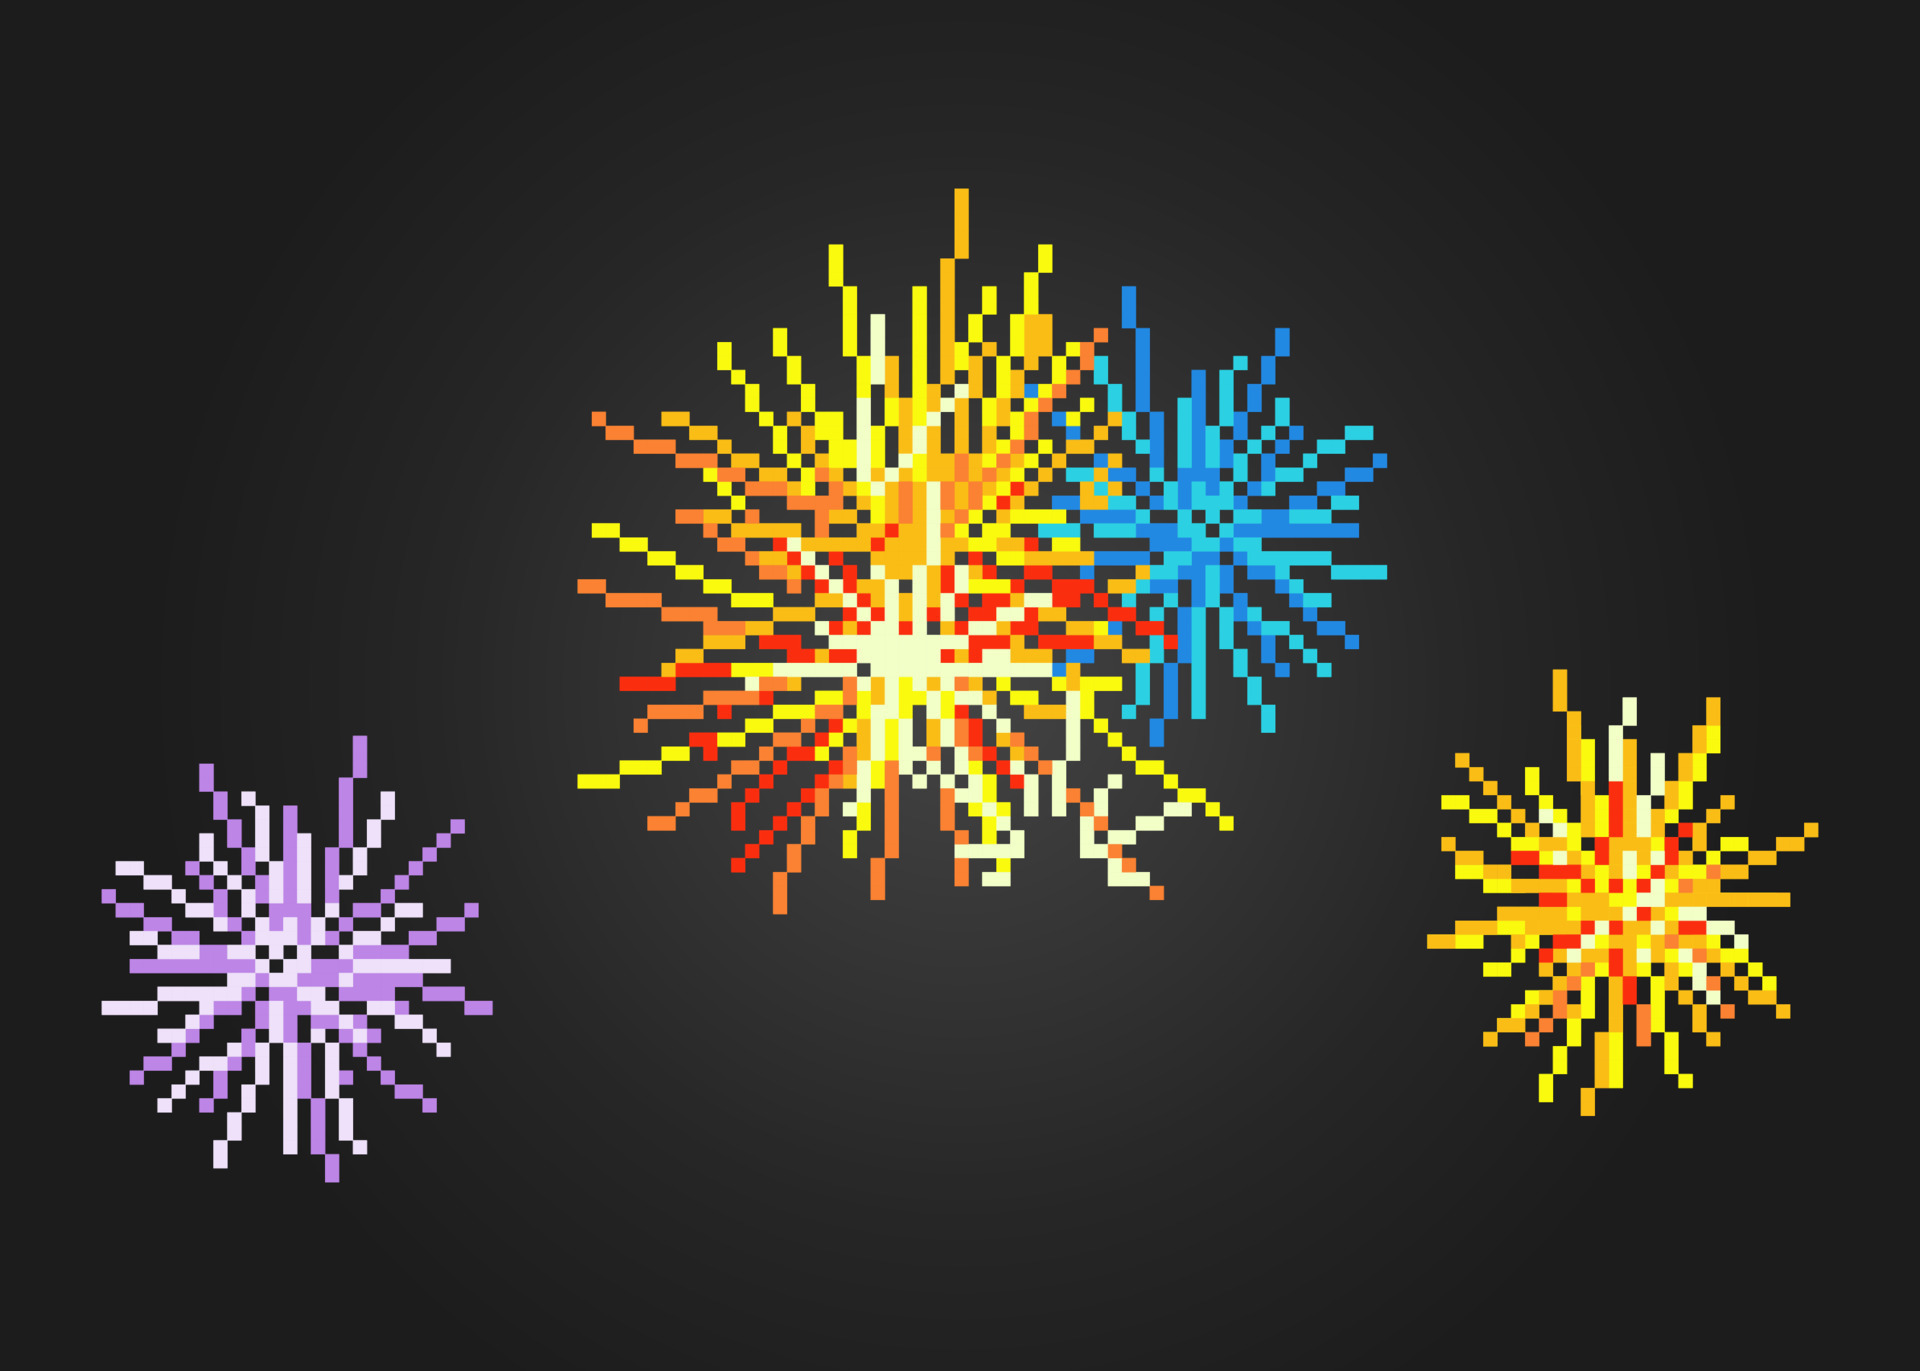 Vetores de Explosão De Fogos De Artifício Da Pixel Art Ativo De